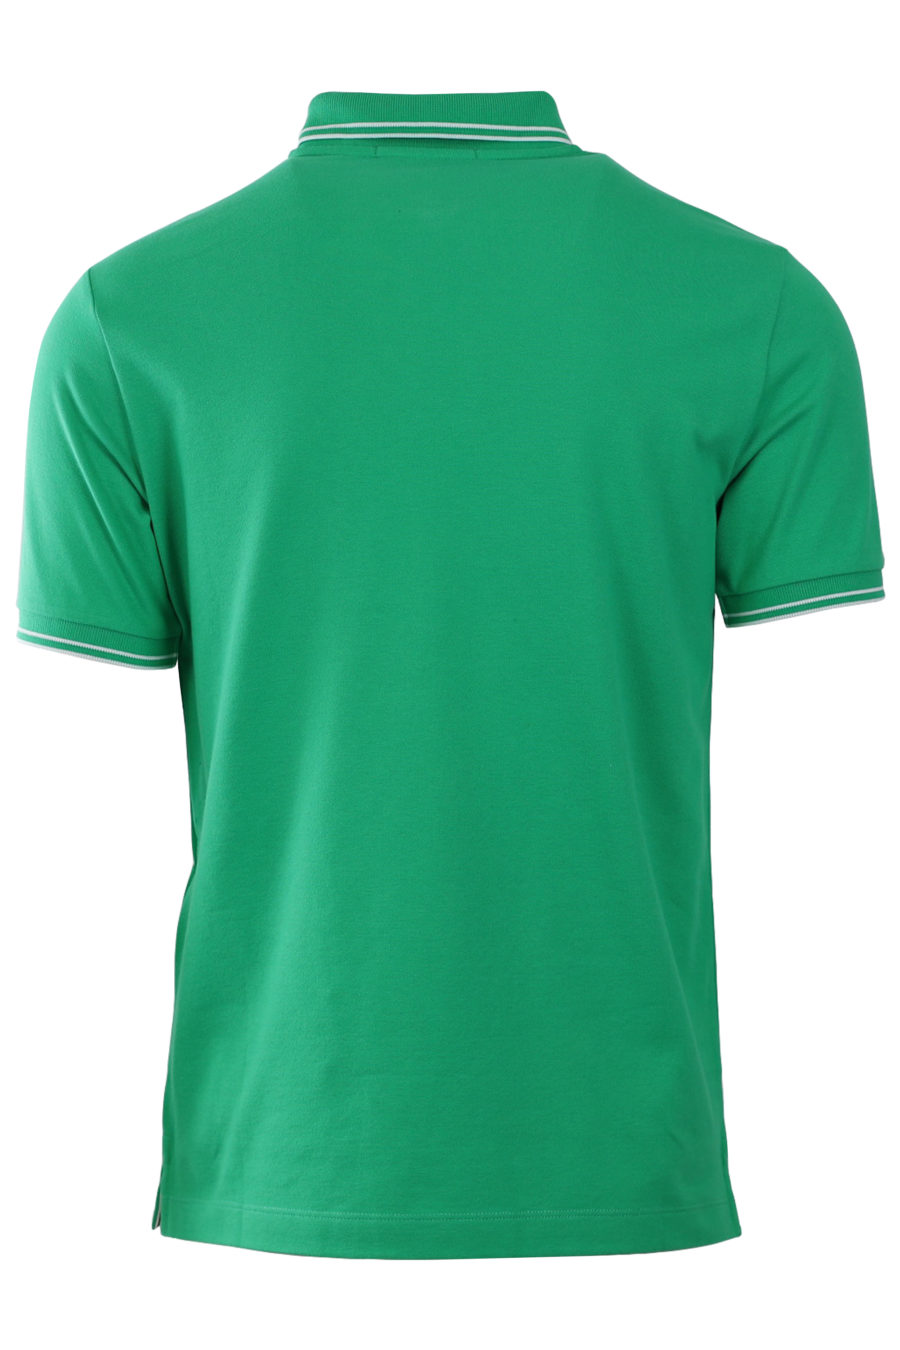 Green polo shirt with white stripes - 03795e729399fa02a37d433e7897e99dd53eea41